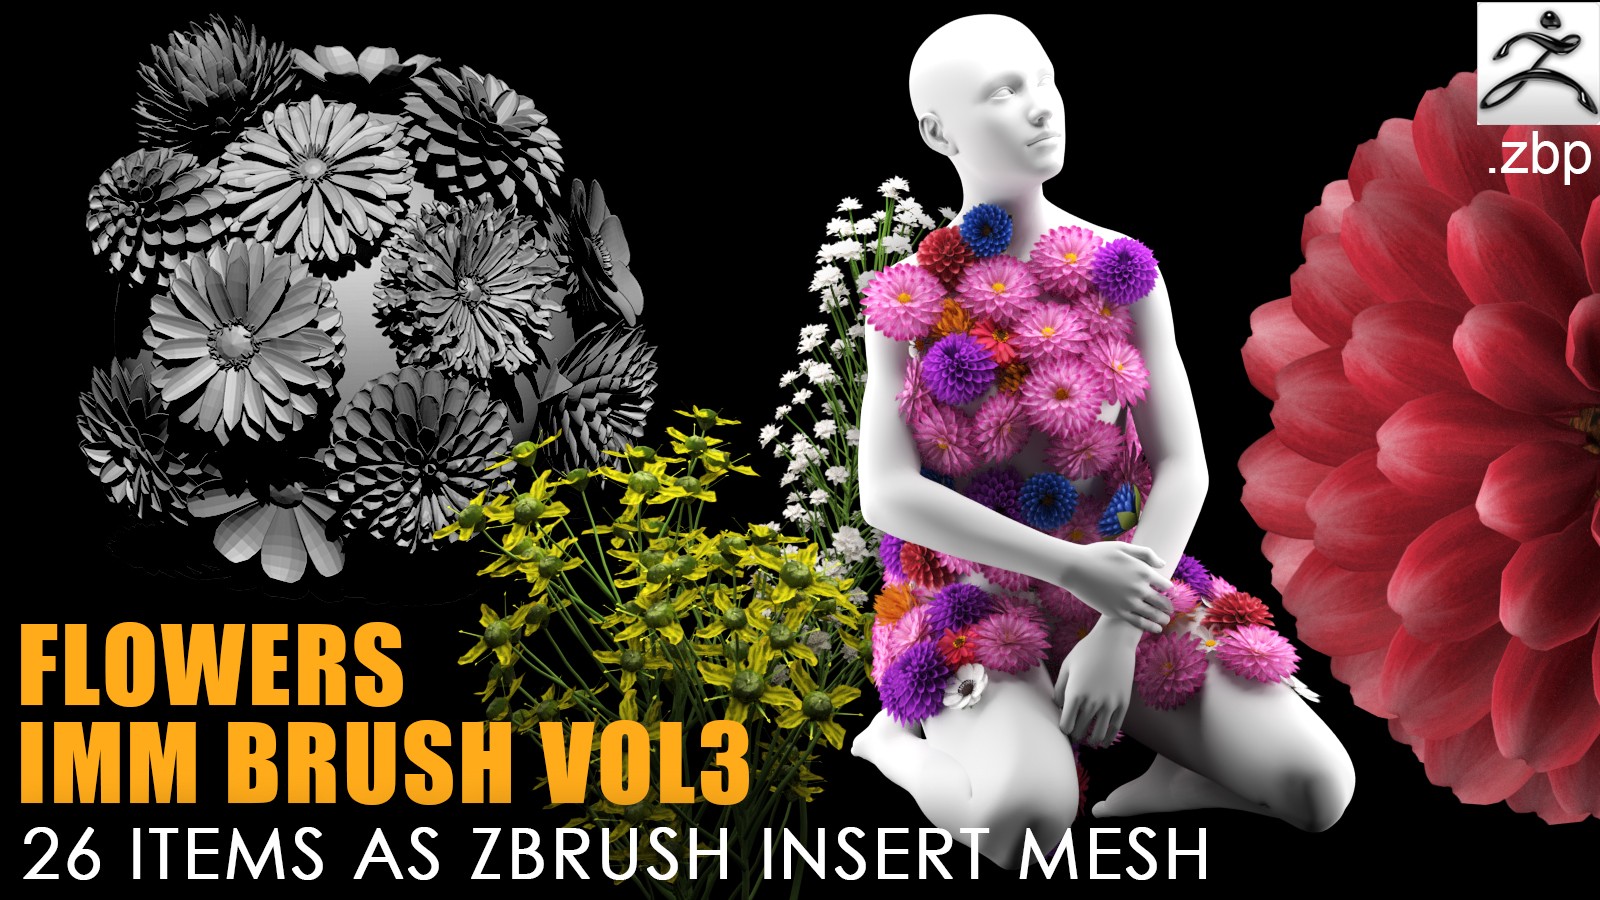 Flowers IMM brush vol 3